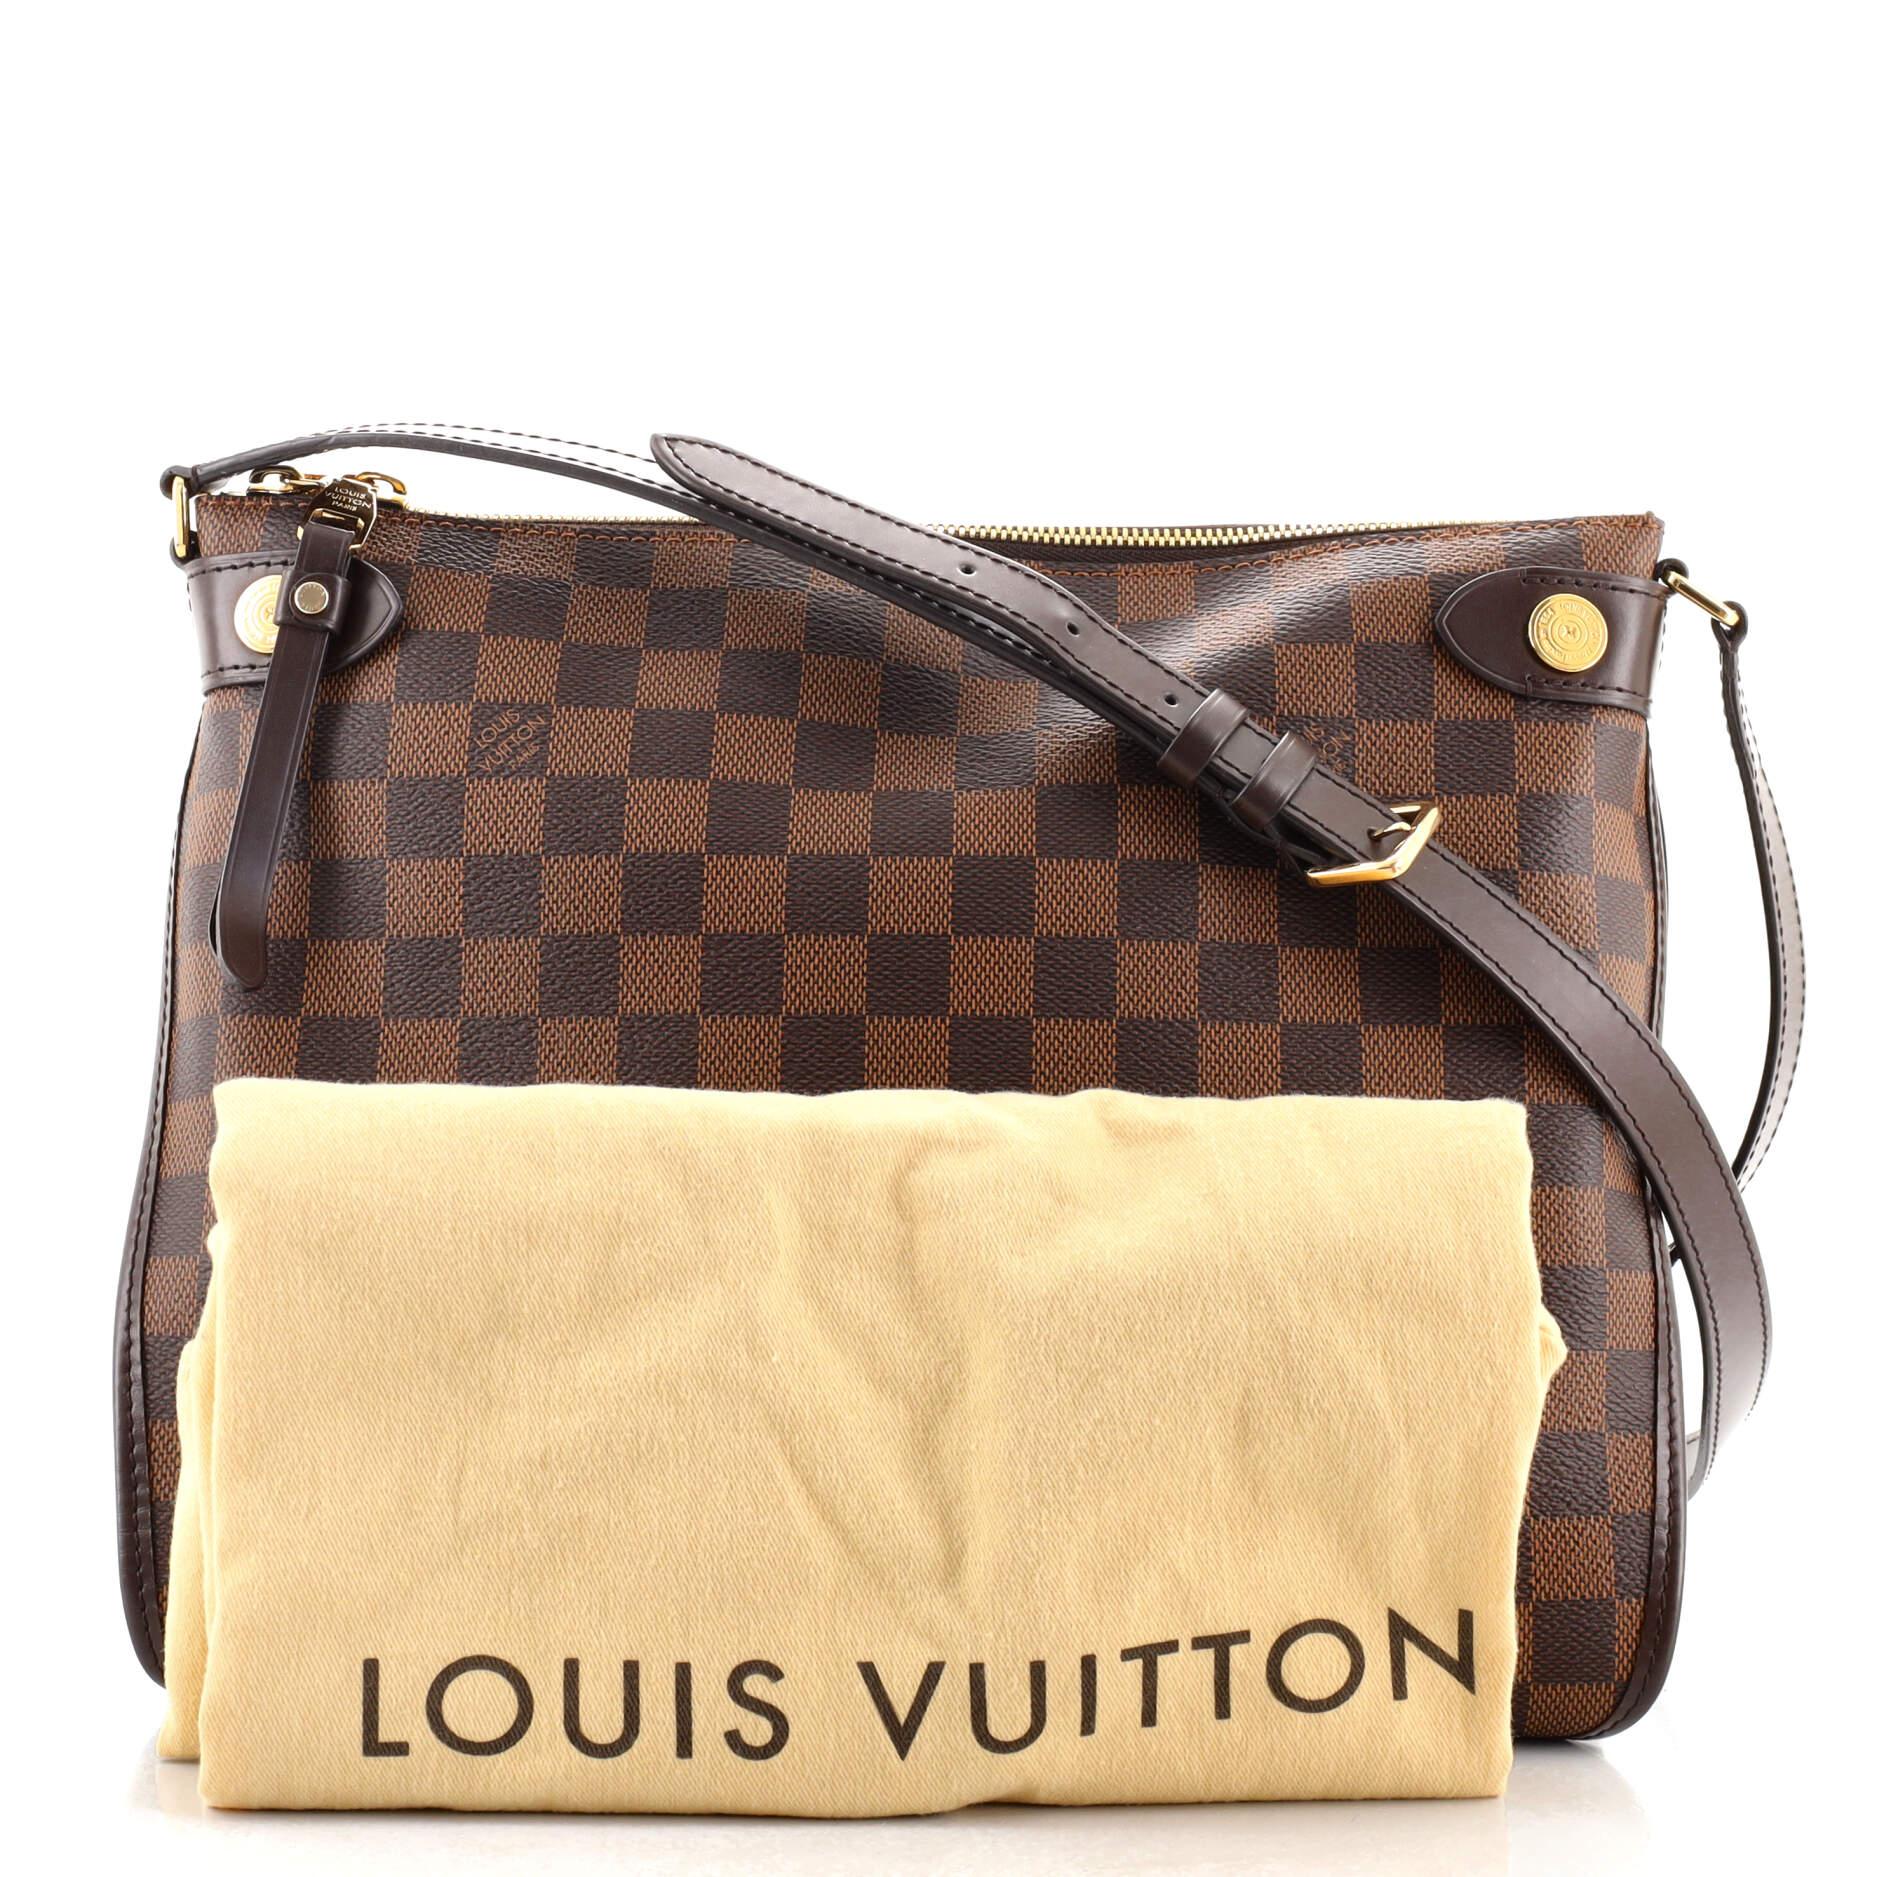 Louis Vuitton Duomo - For Sale on 1stDibs  louis vuitton duomo bag, louis vuitton  duomo damier ebene, duomo lv